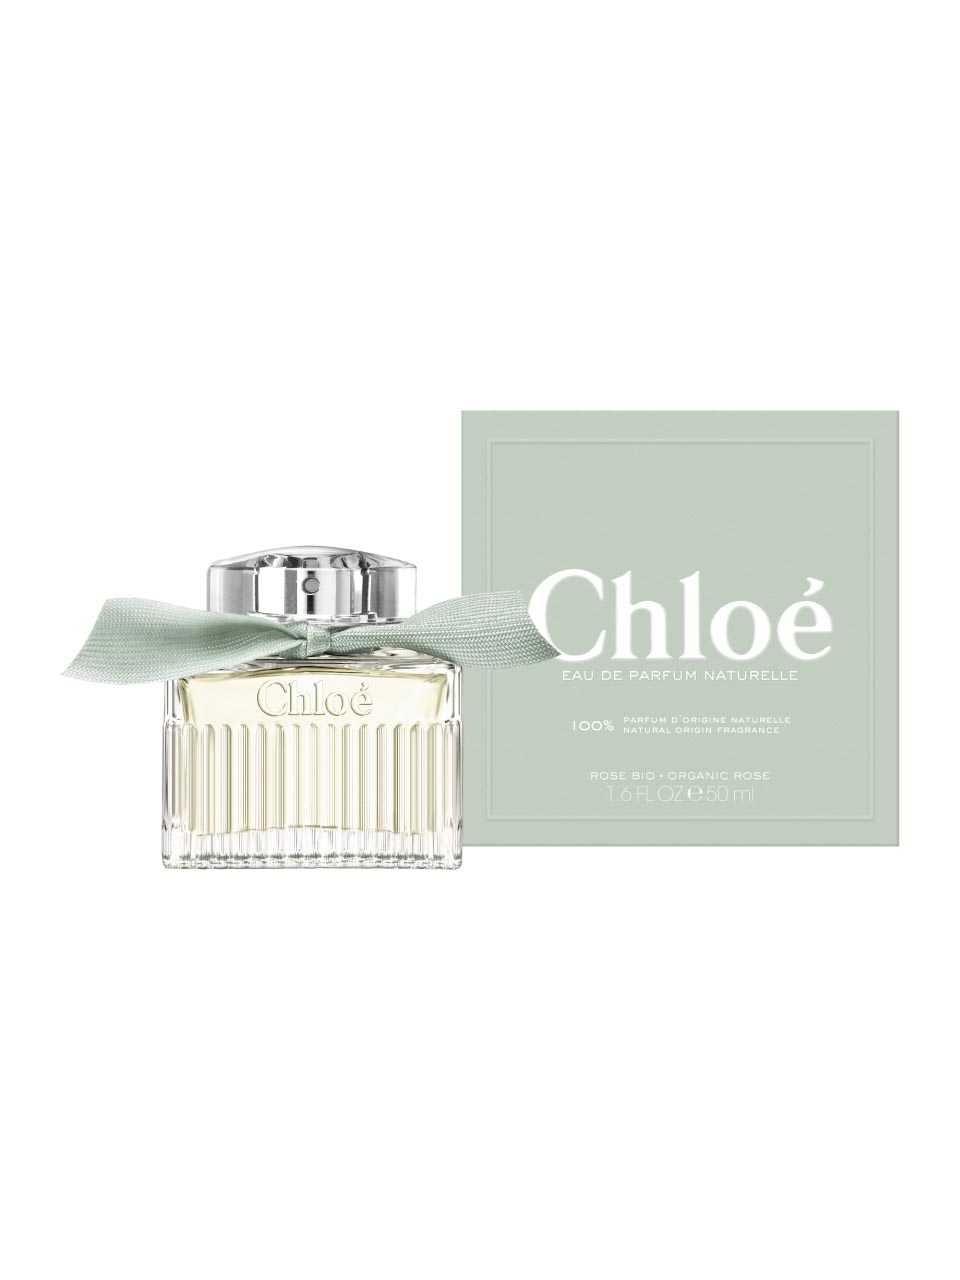 Chloé Signature Naturelle Eau de Parfum 50 ml null - onesize - 1